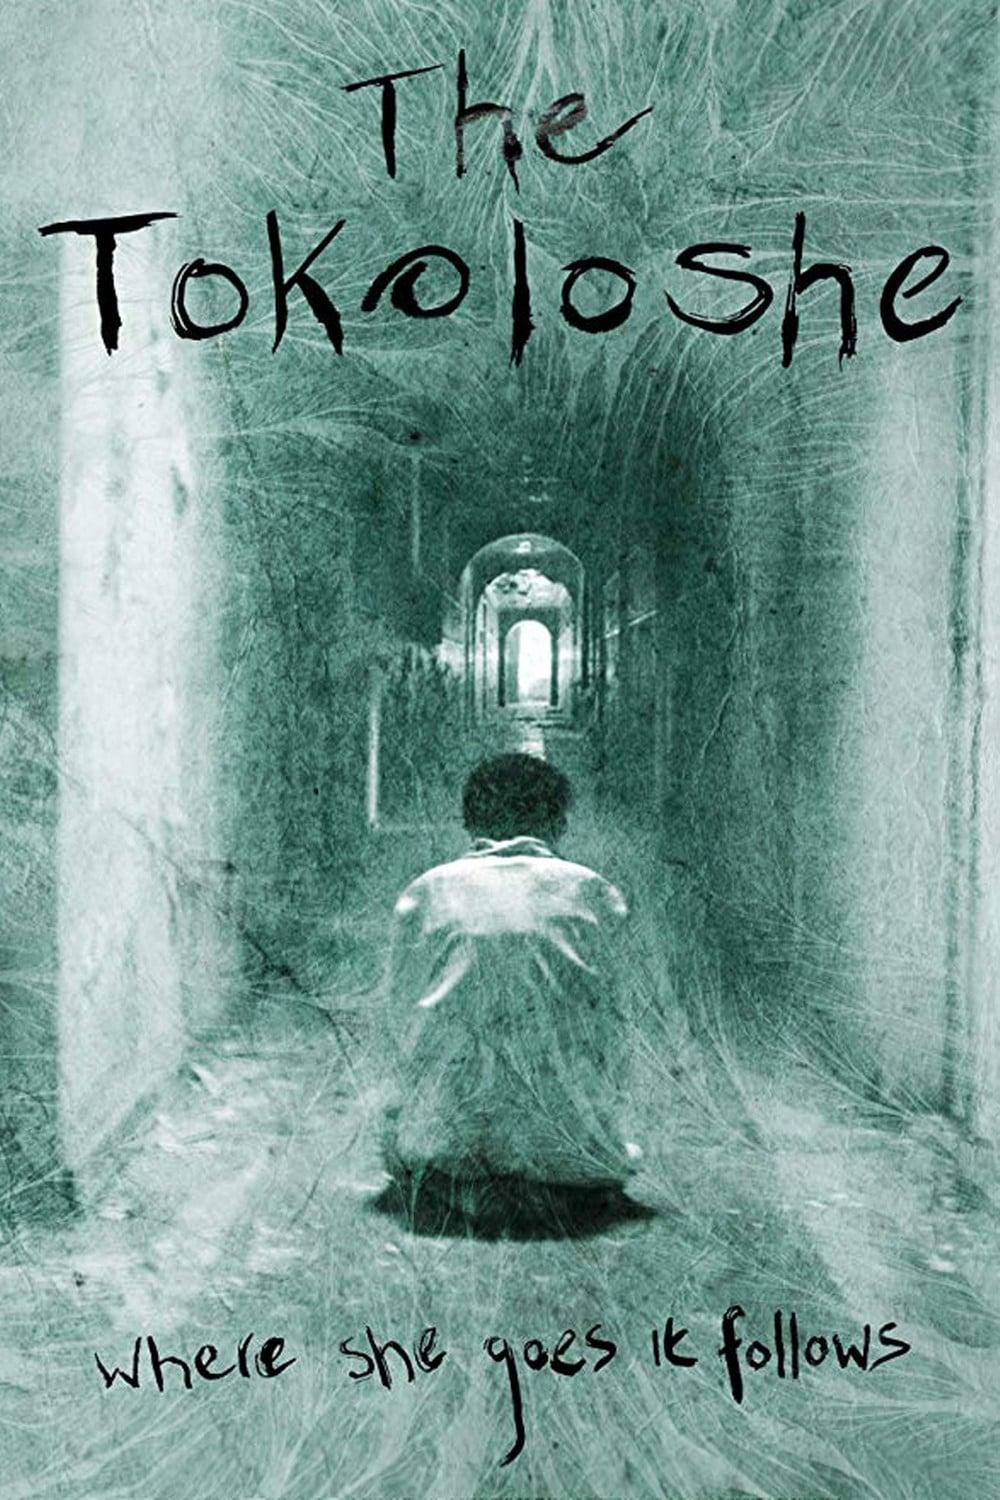 The Tokoloshe poster